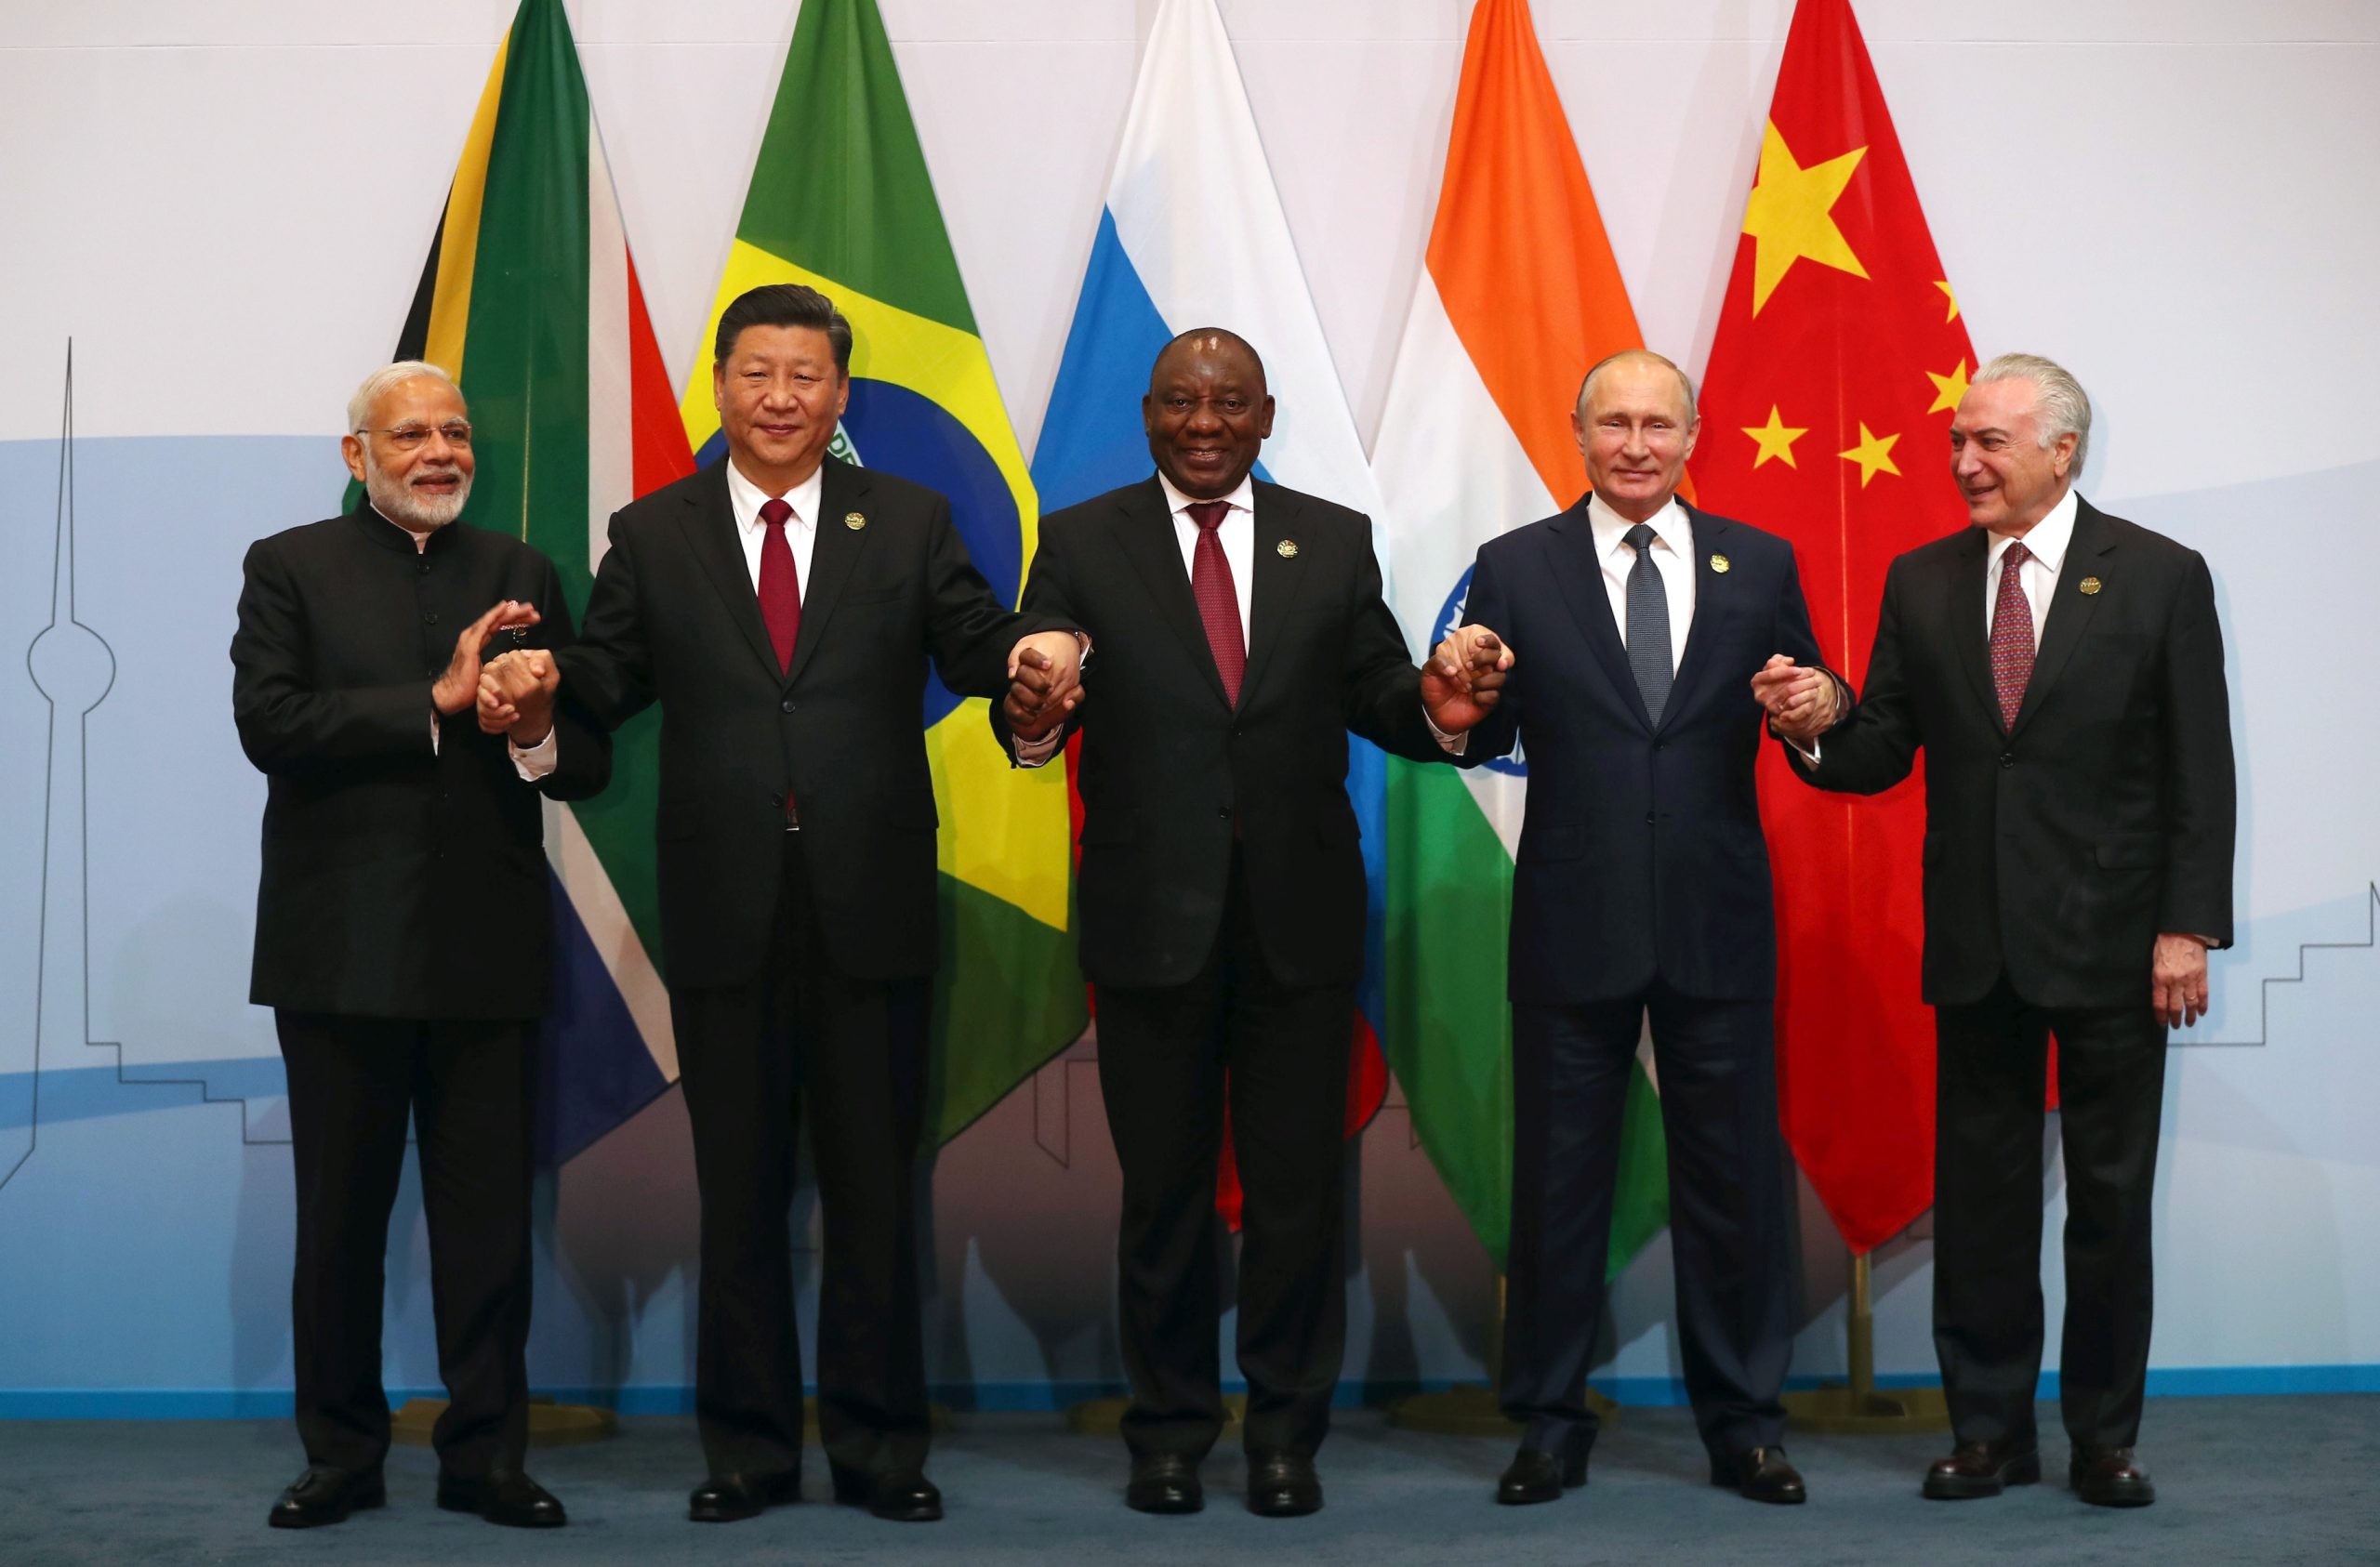 30 ülke daha BRICS’e katılmak istiyor!